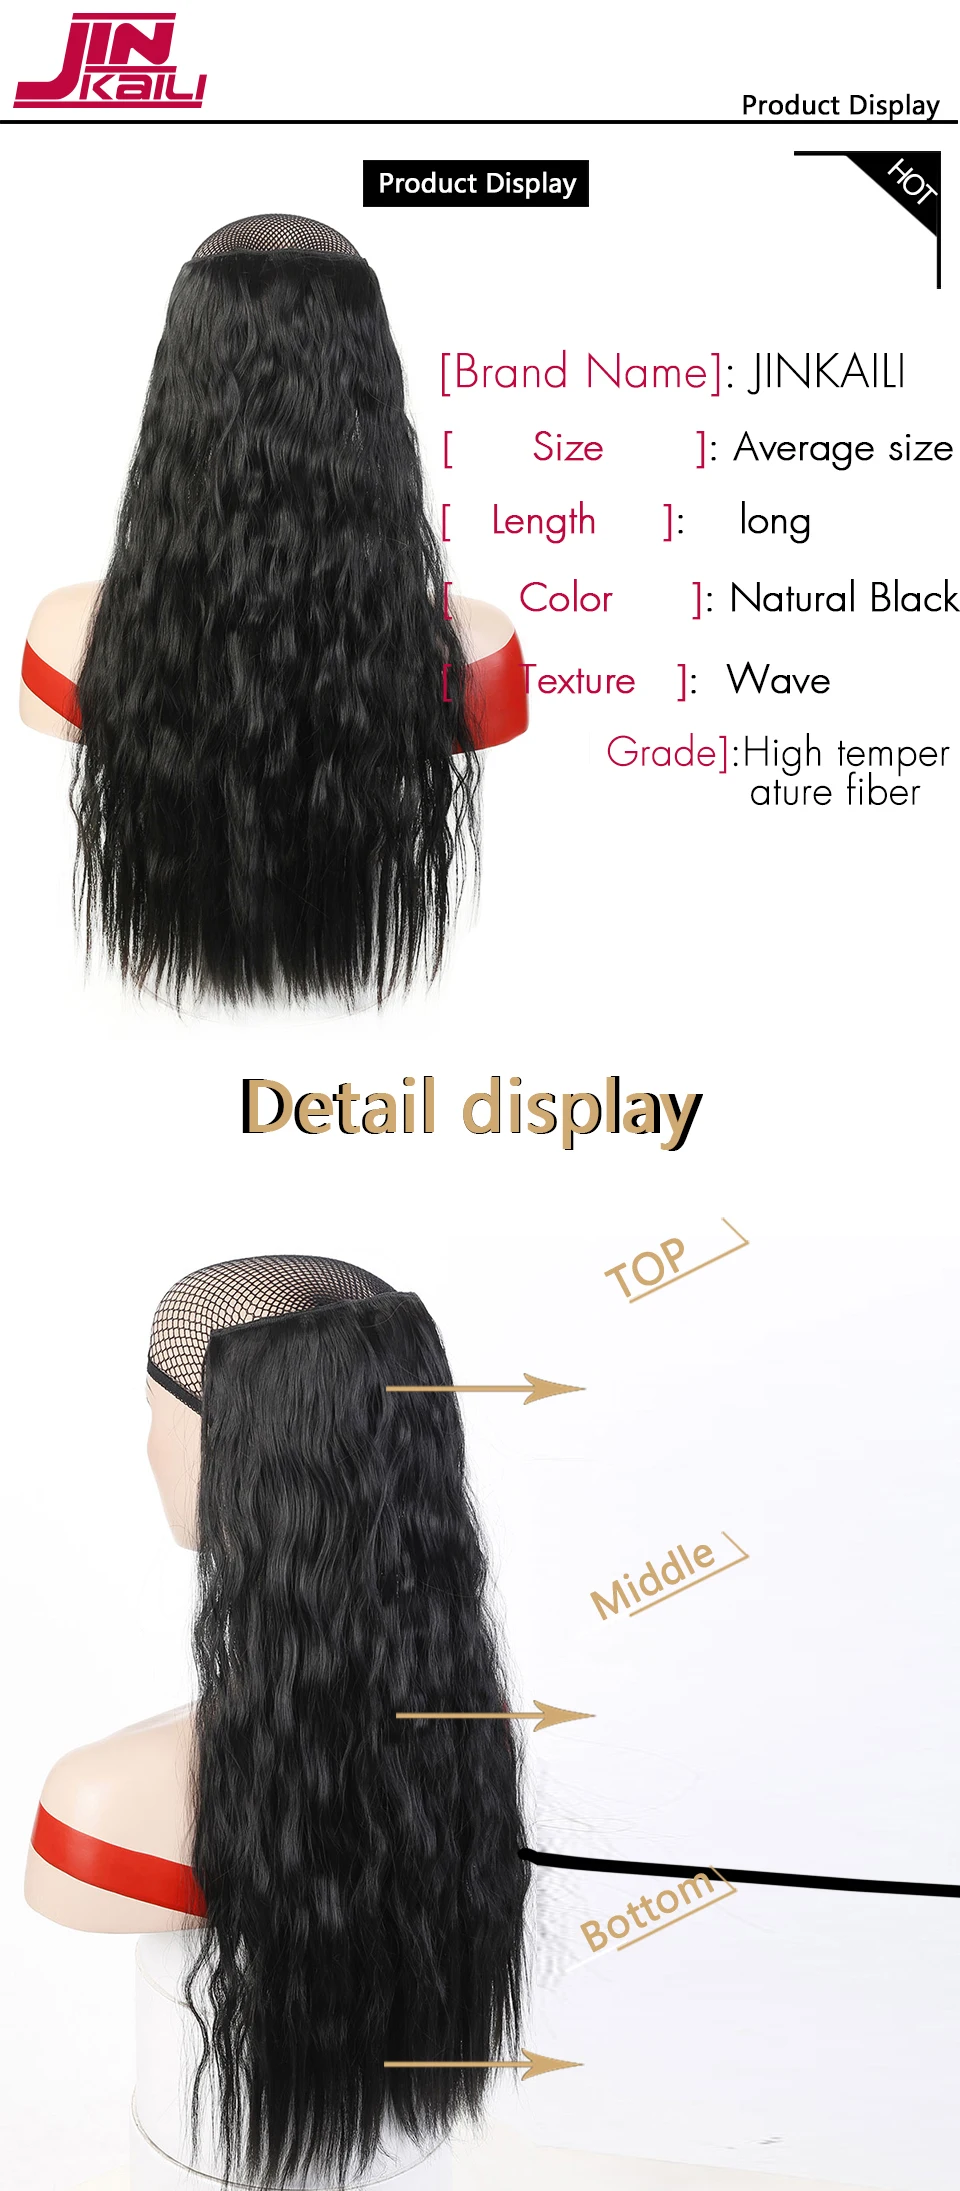 JINKAILI 2" длинные кудрявые вьющиеся волосы для наращивания на 5 клипсах, накладные волосы для наращивания, термостойкие синтетические накладные волосы, прическа